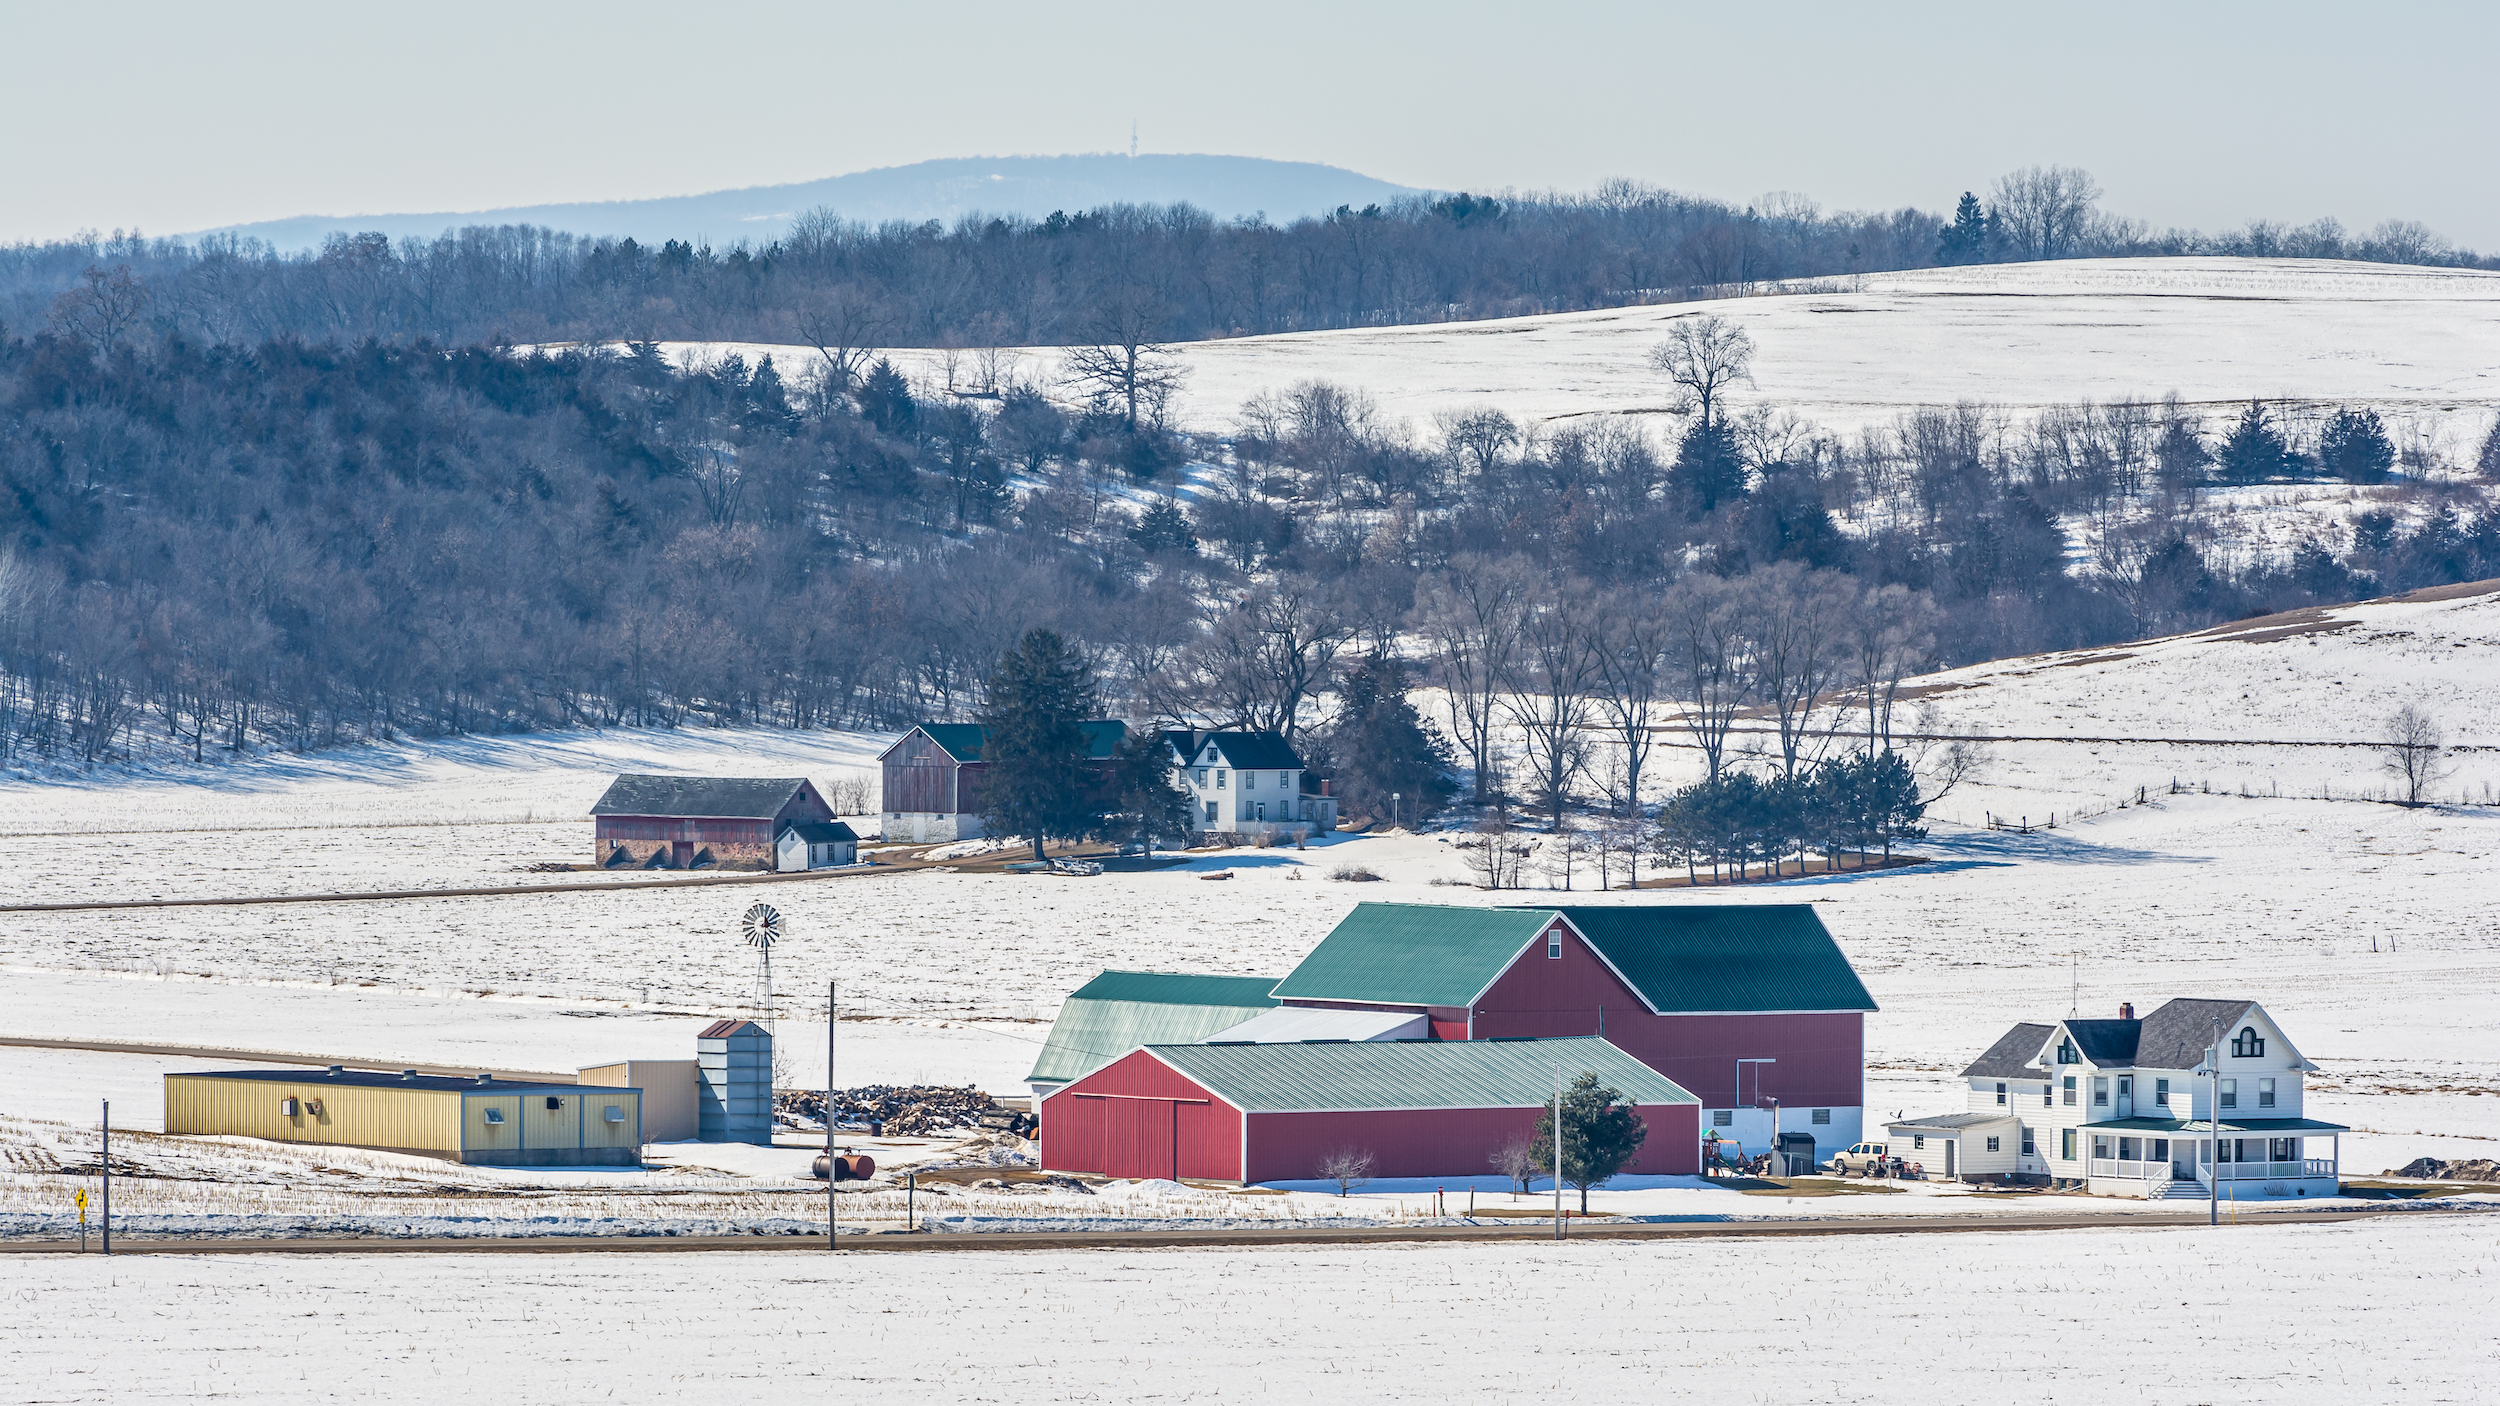 A farm in winter